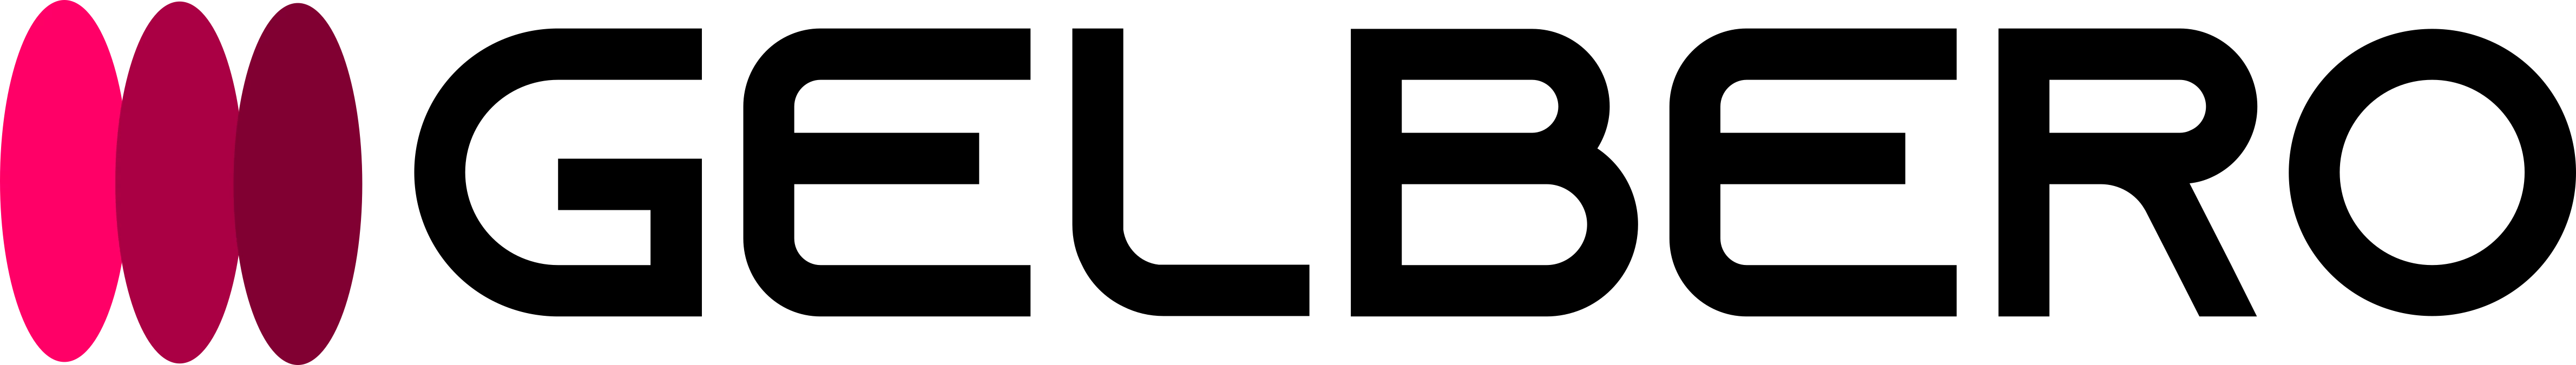 Gelbero logo